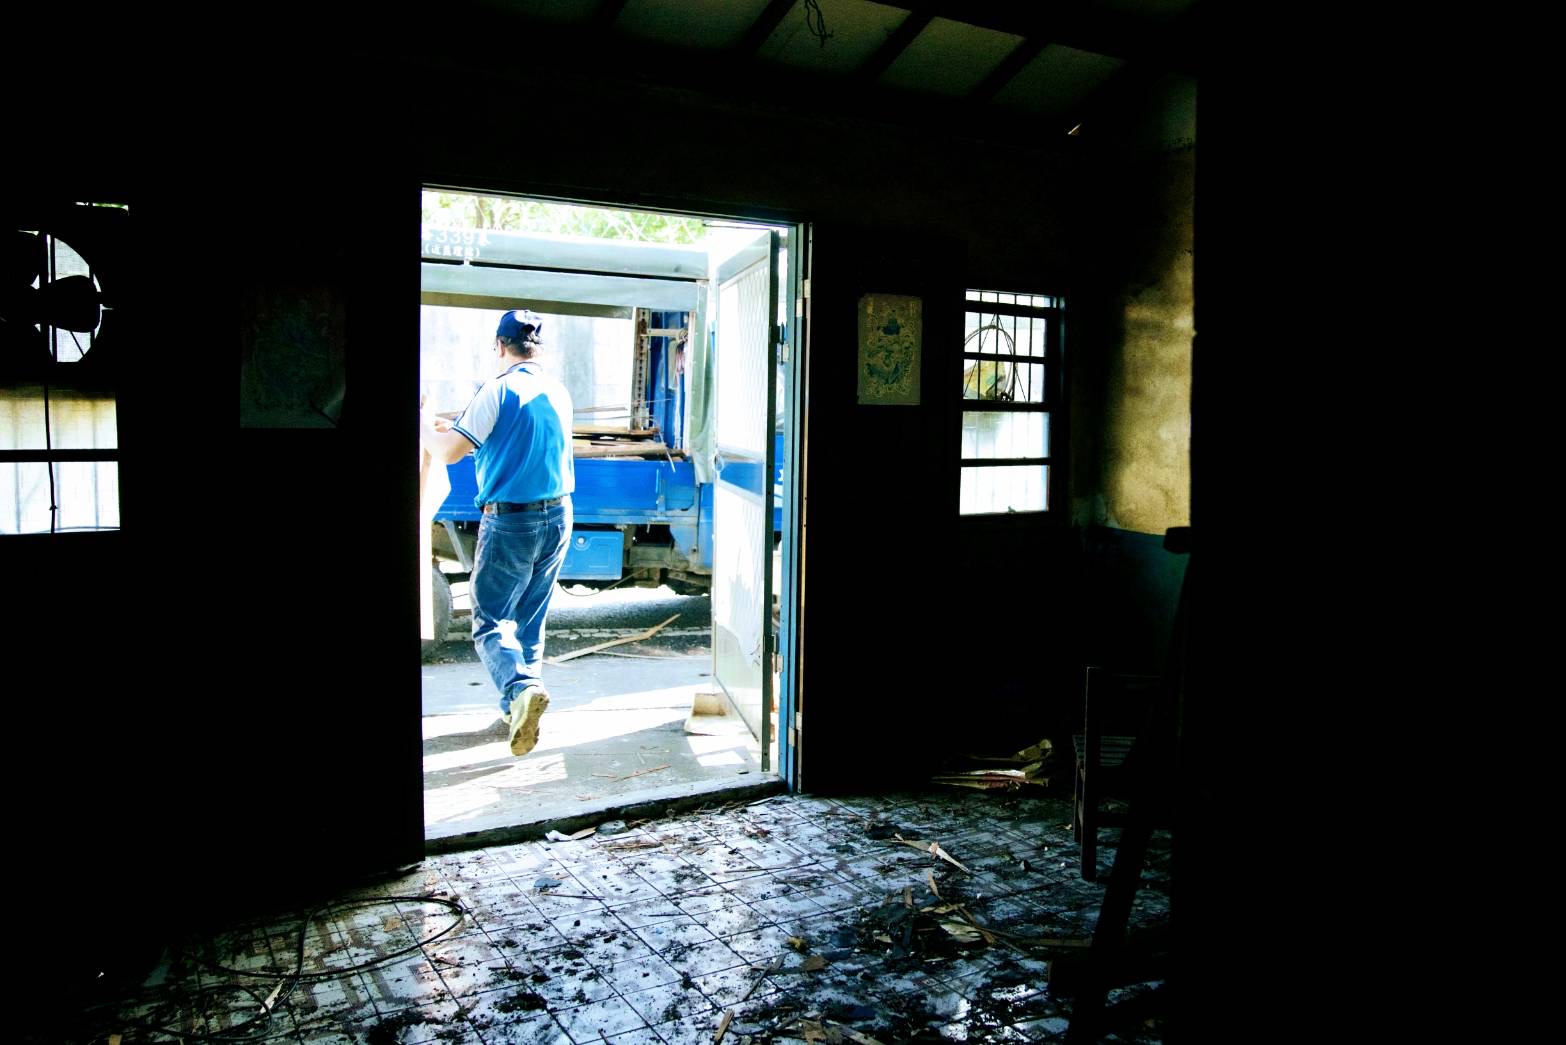 整修工人搬运清除屋内废弃建材（示意图）。记者古和纯／摄影